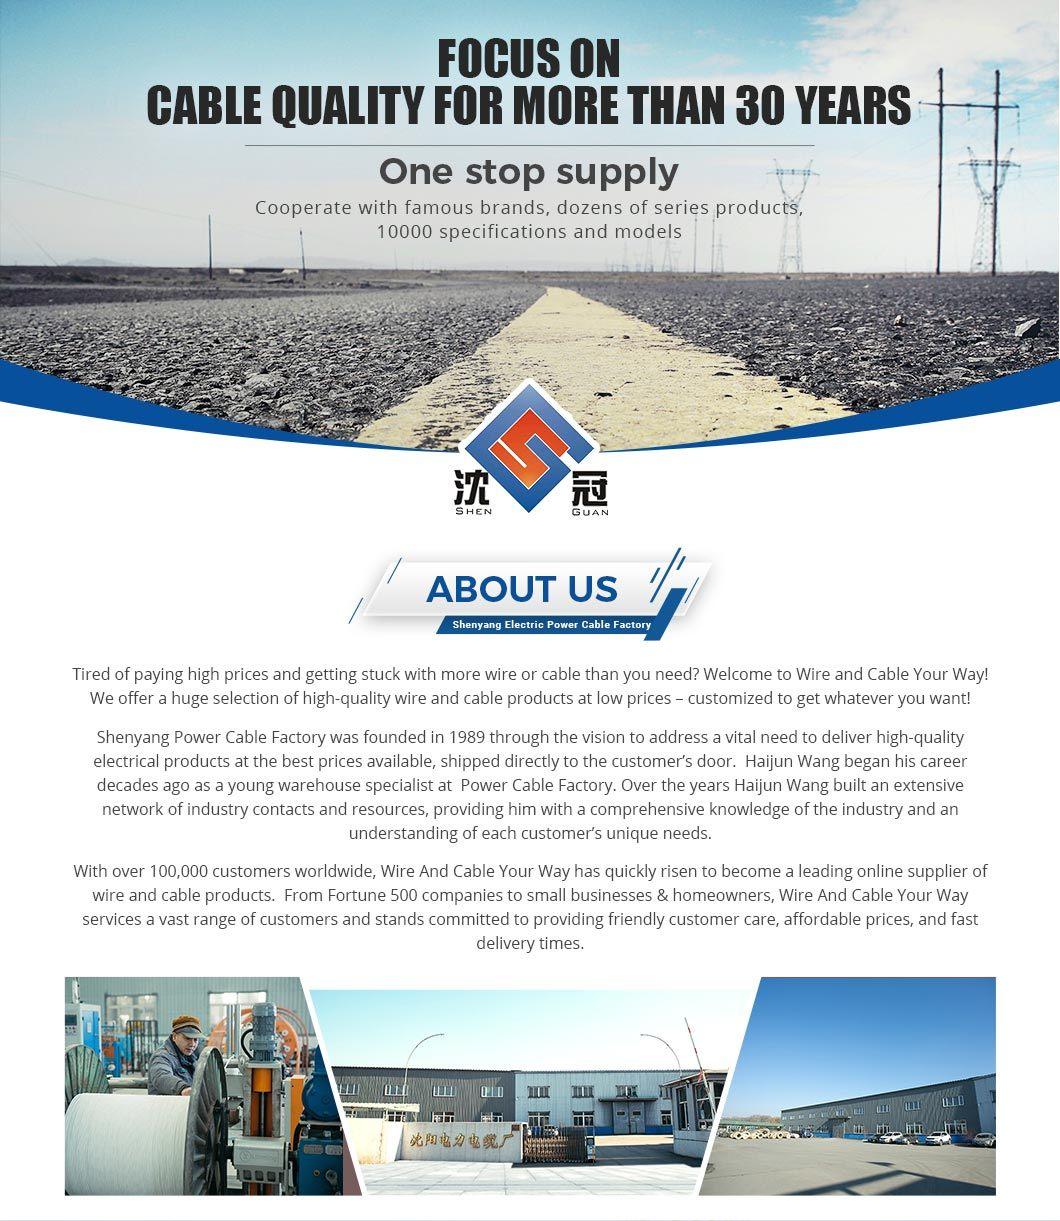 16mm2 4 Core 0.6/1kv Cu/PVC/Swa/PVC Power Cable Electrical Cable Electric Cable Wire Cable Control Cable